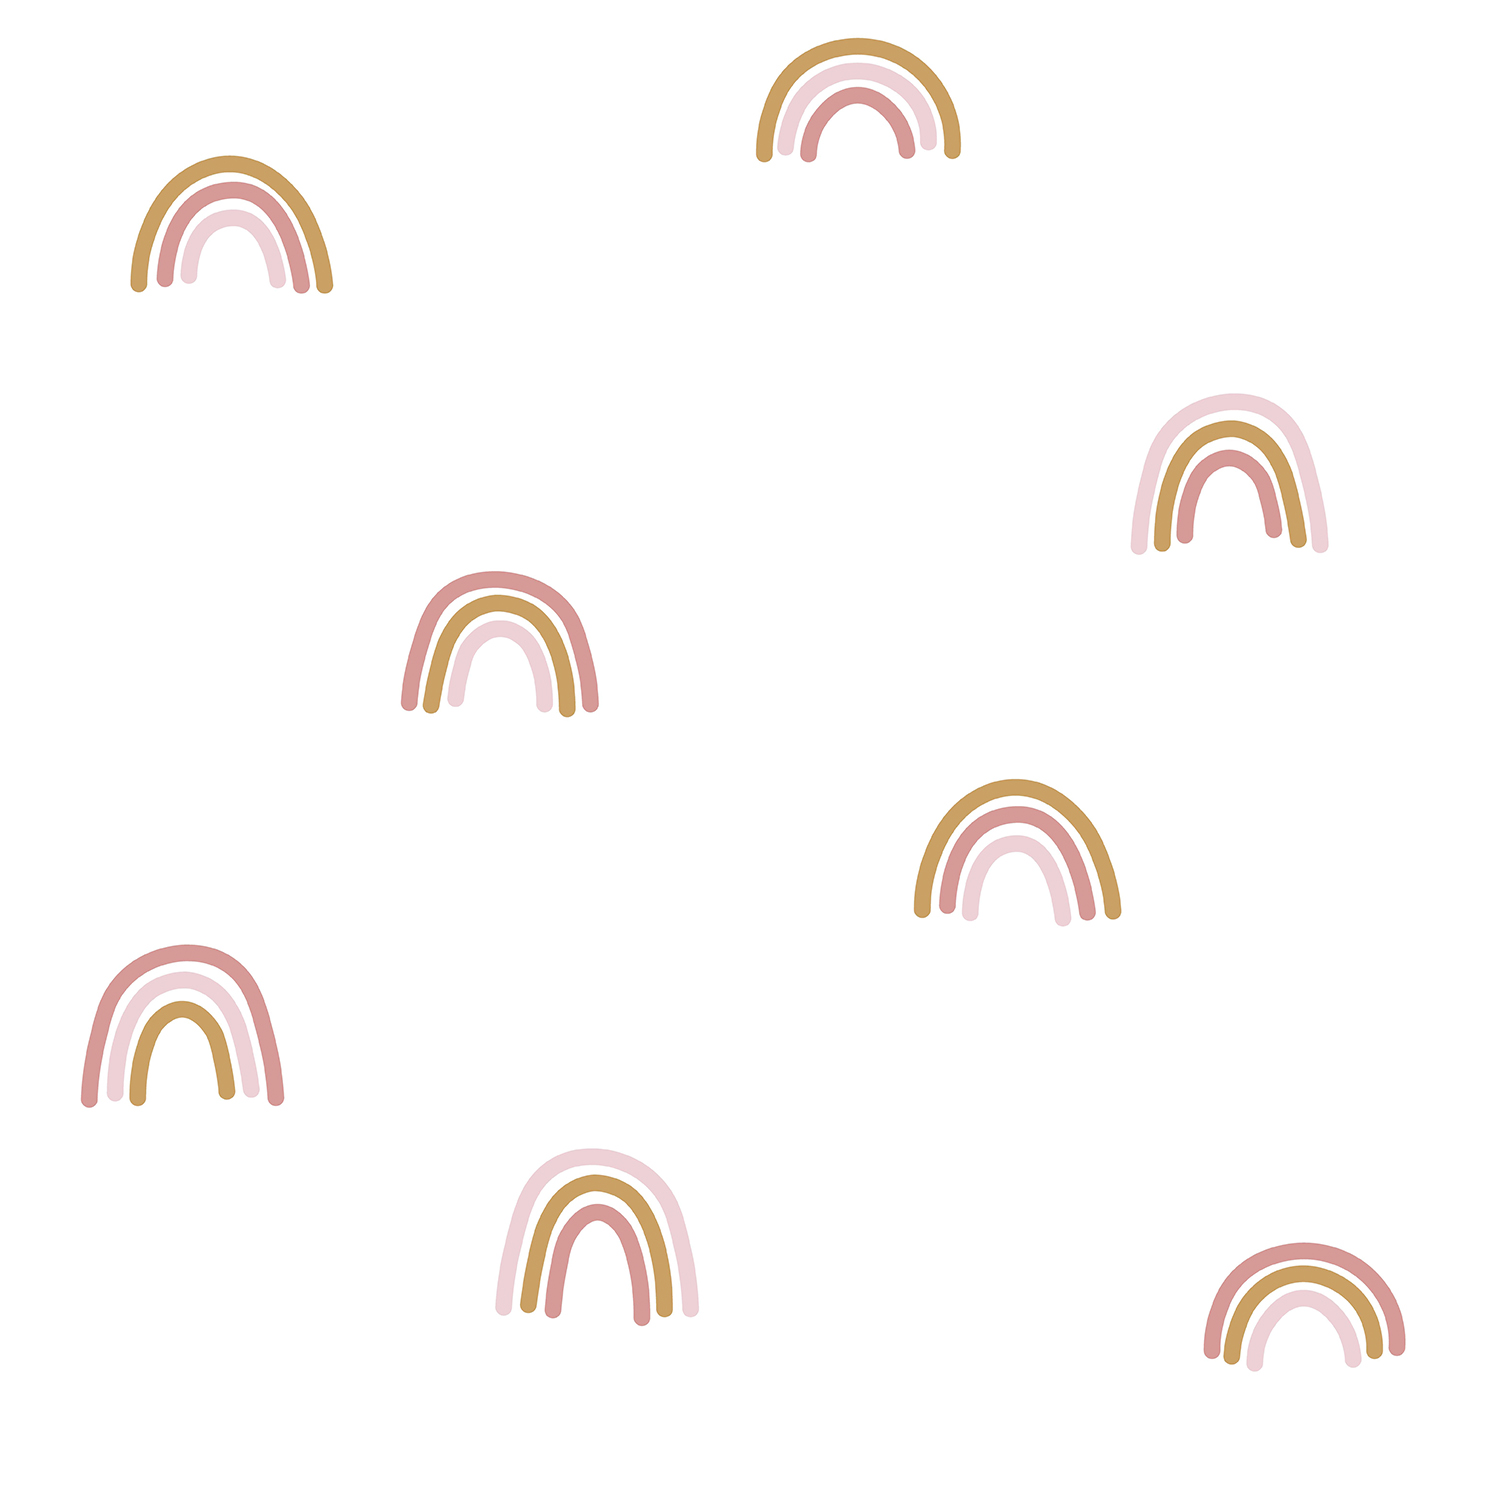 Tapete Little Rainbow / kleine Regenbogen weiß